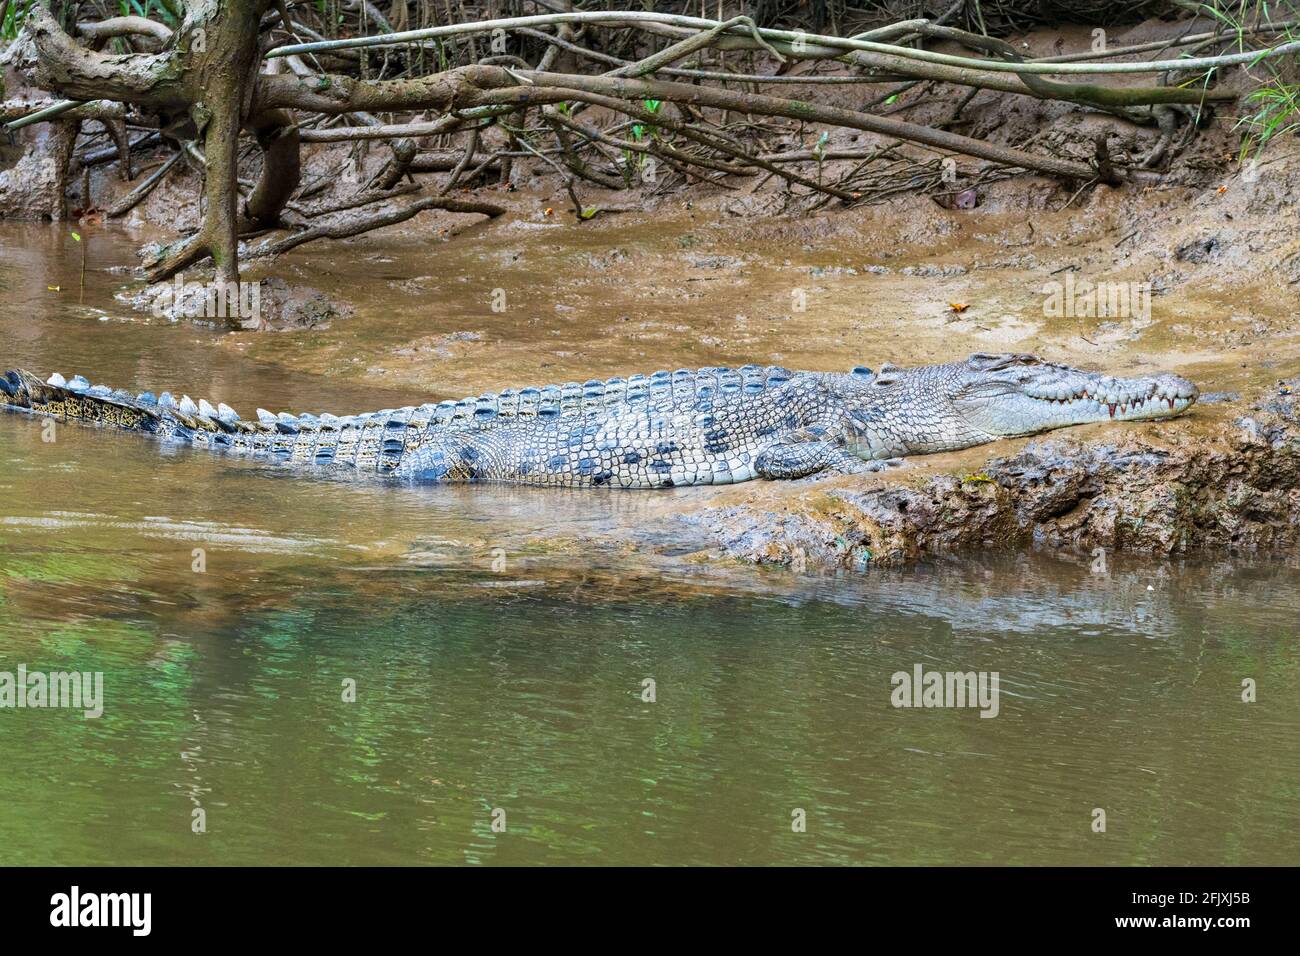 Una mujer adulta de cocodrilo de agua salada (Crocodylus porosus) tomando sol en la orilla del río, el río Daintree, el Parque Nacional Daintree, en el extremo norte de Queensland Foto de stock